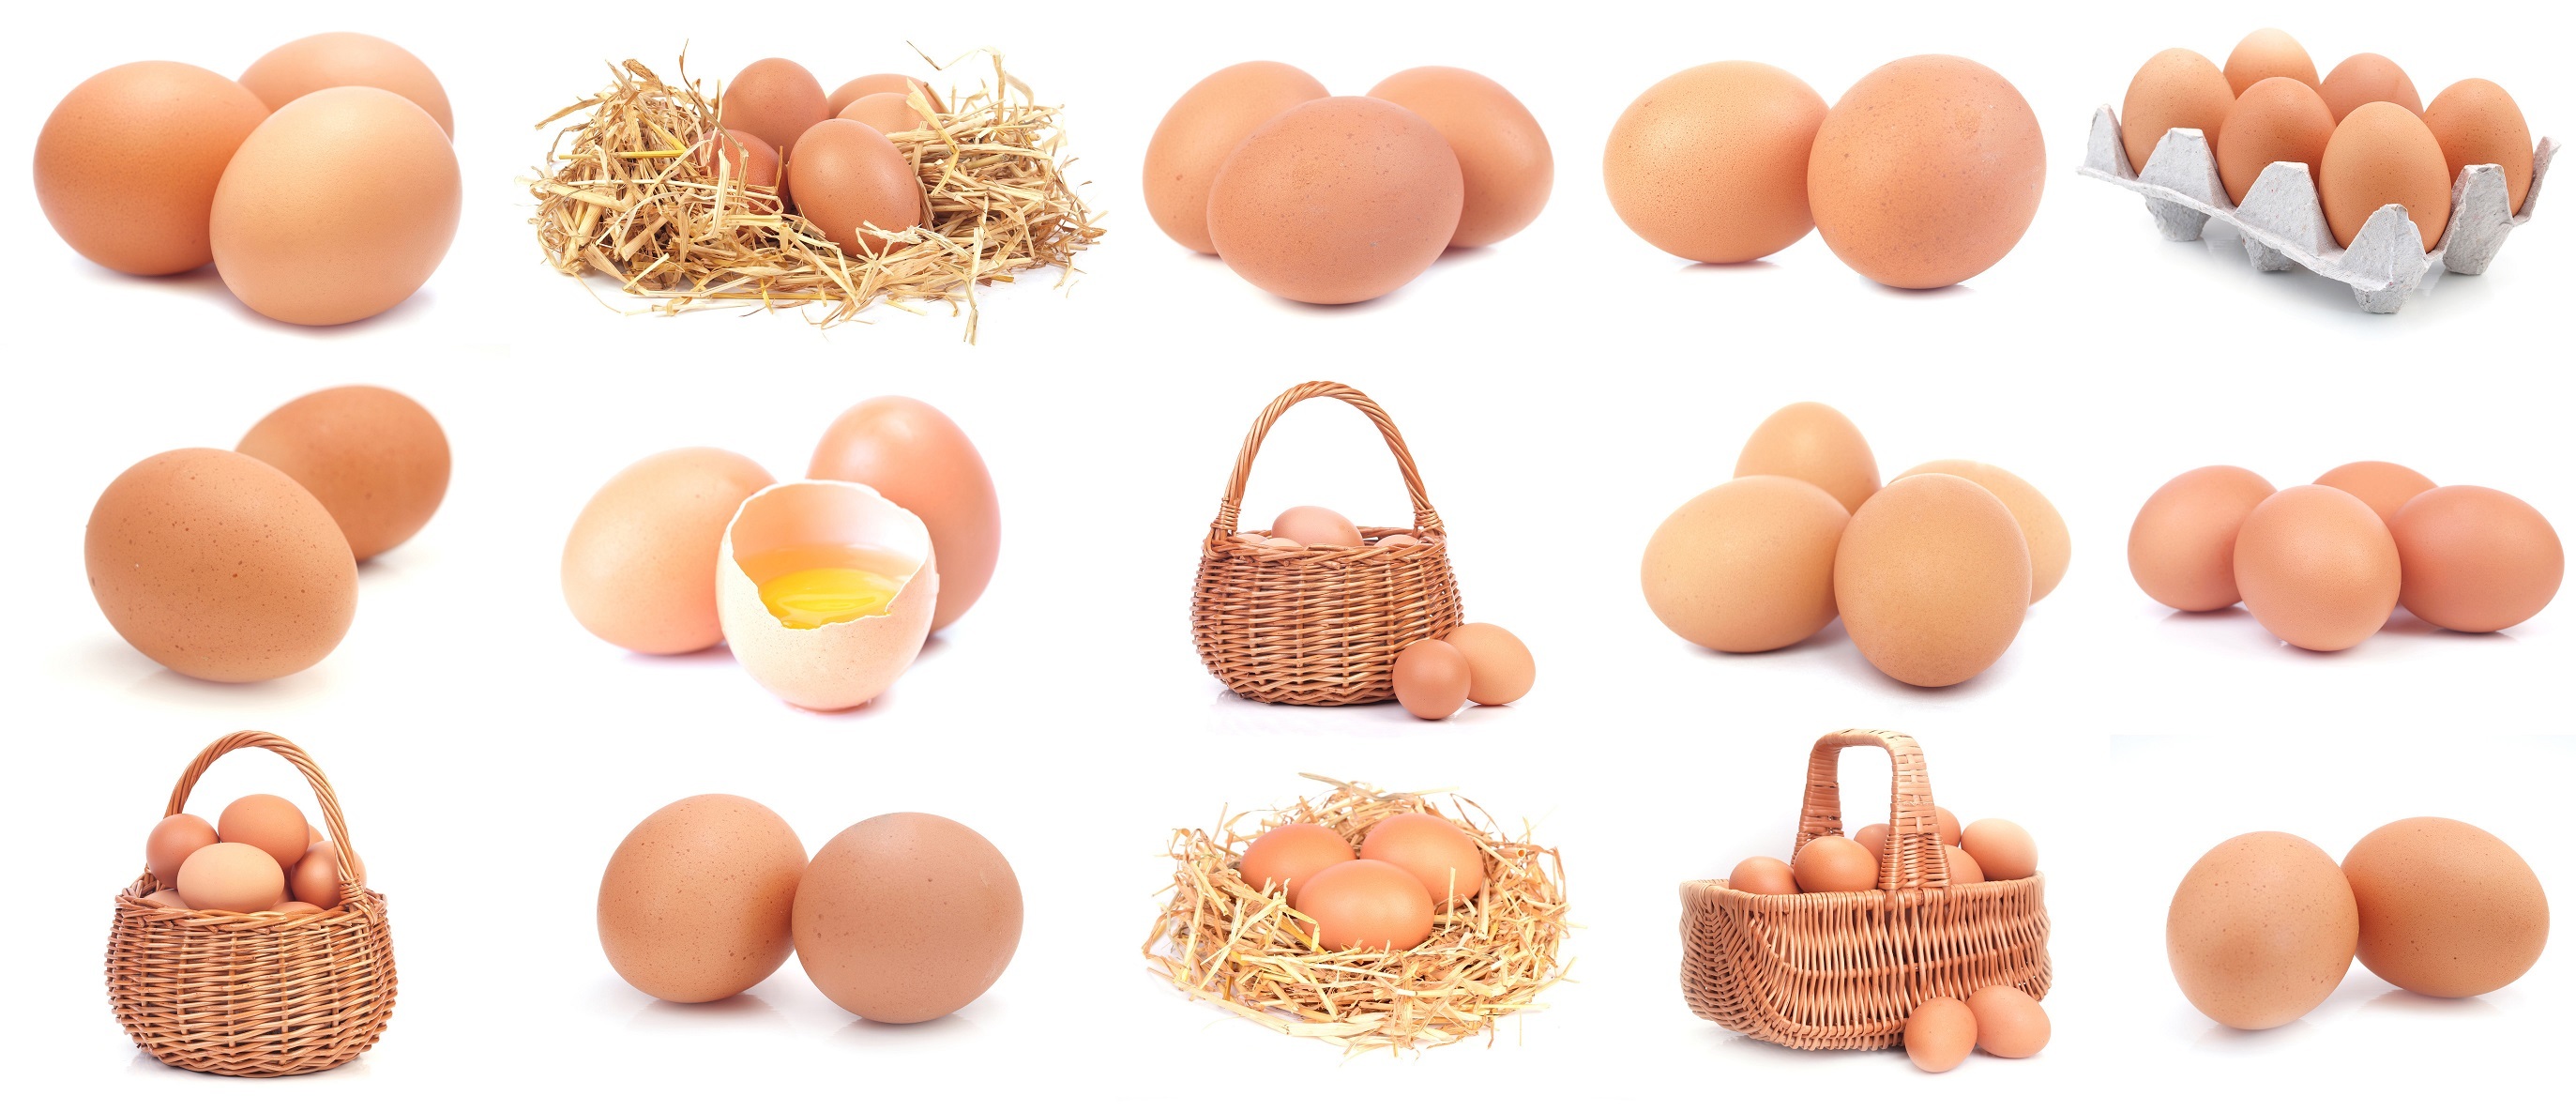 米国の卵の価格 (4)